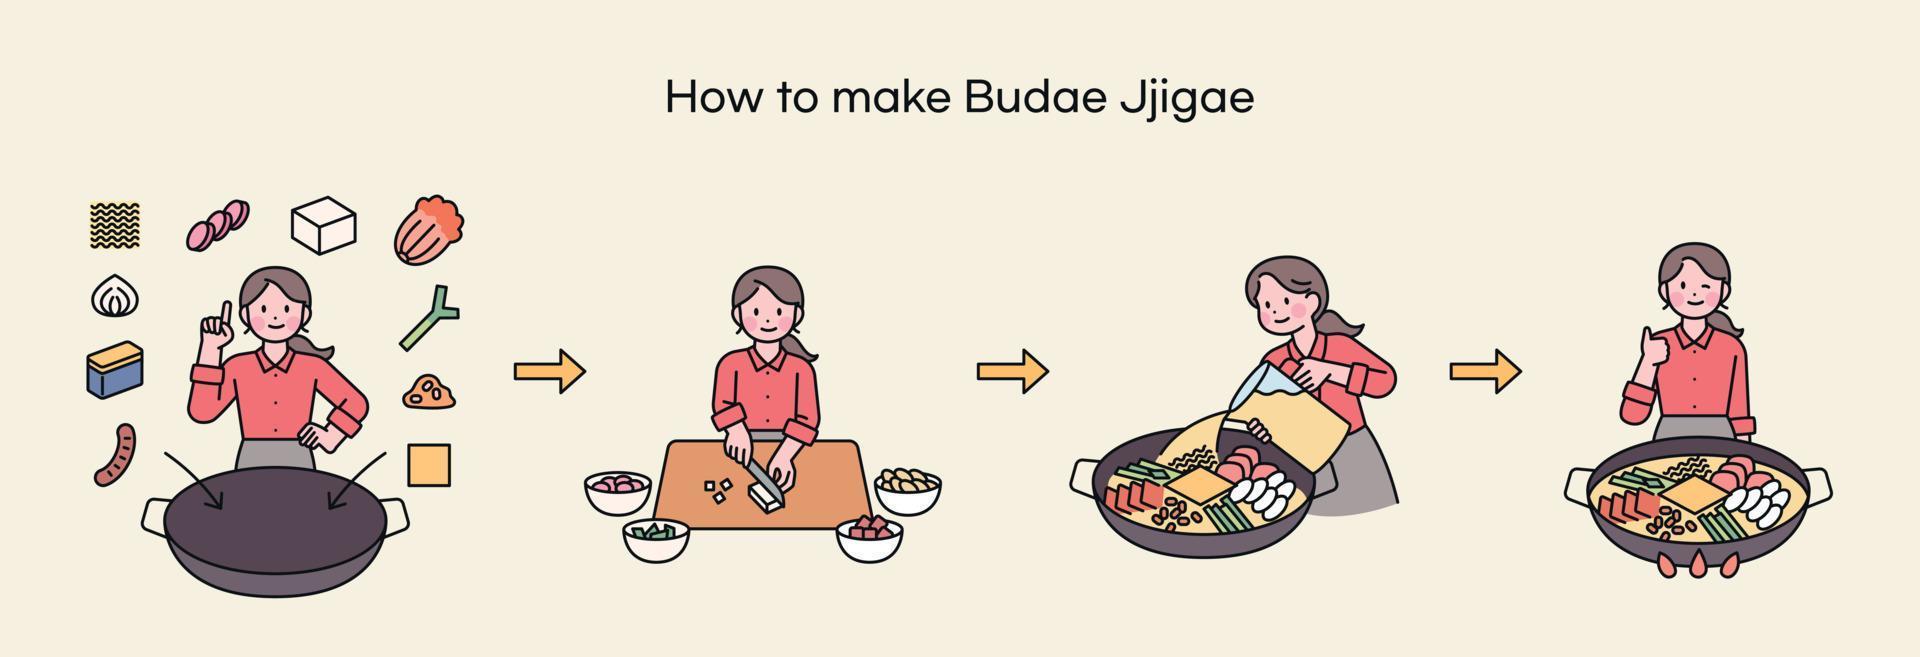 budae-jjigae, un aliment ancré dans l'histoire coréenne. un chef explique comment faire du budae-jjigae. vecteur